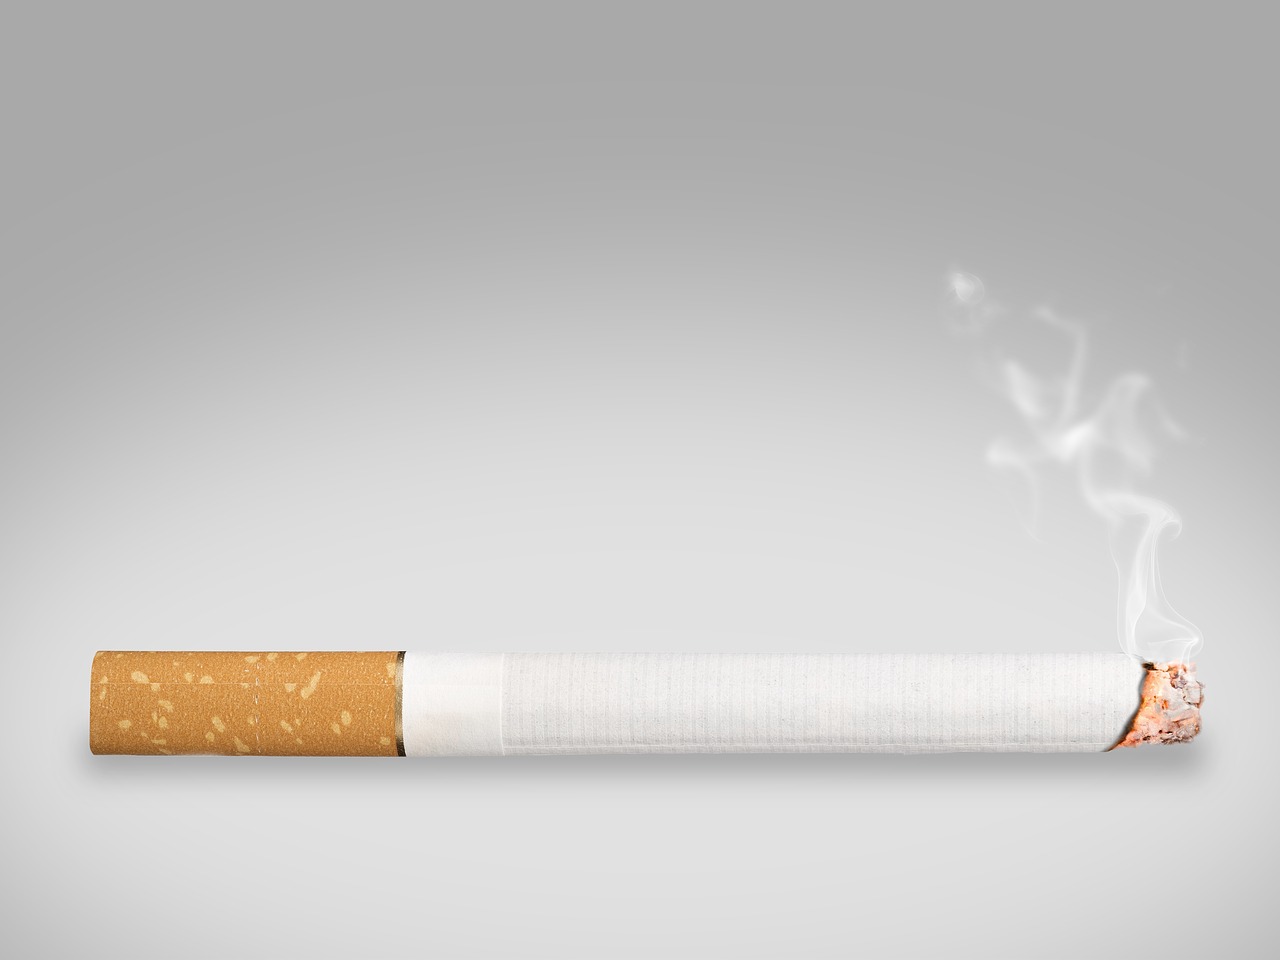 Cigarečių, Dūmai, Rūkymas, Pelenai, Cigaras, Deginti, Miręs, Nesveika, Naudos Iš, Priklausomybe